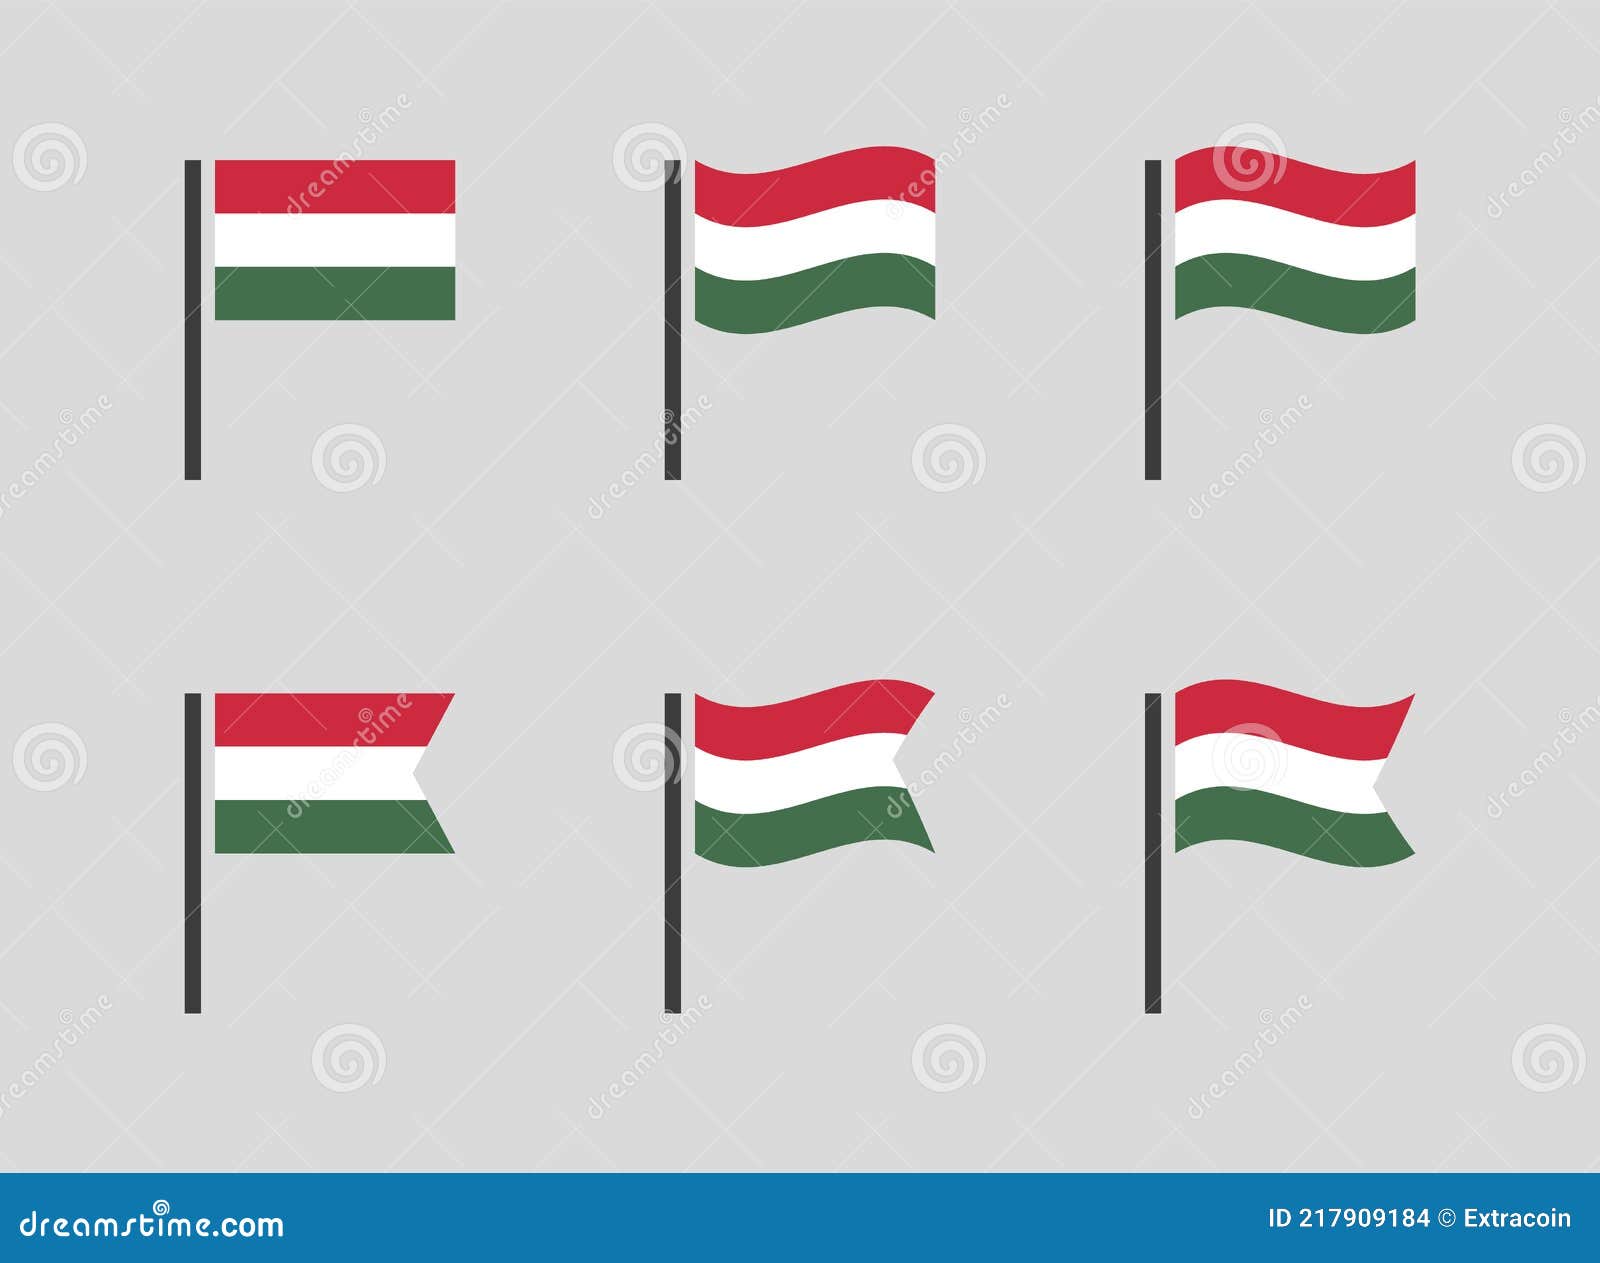 hungary flag s set, national flag icons of hungary